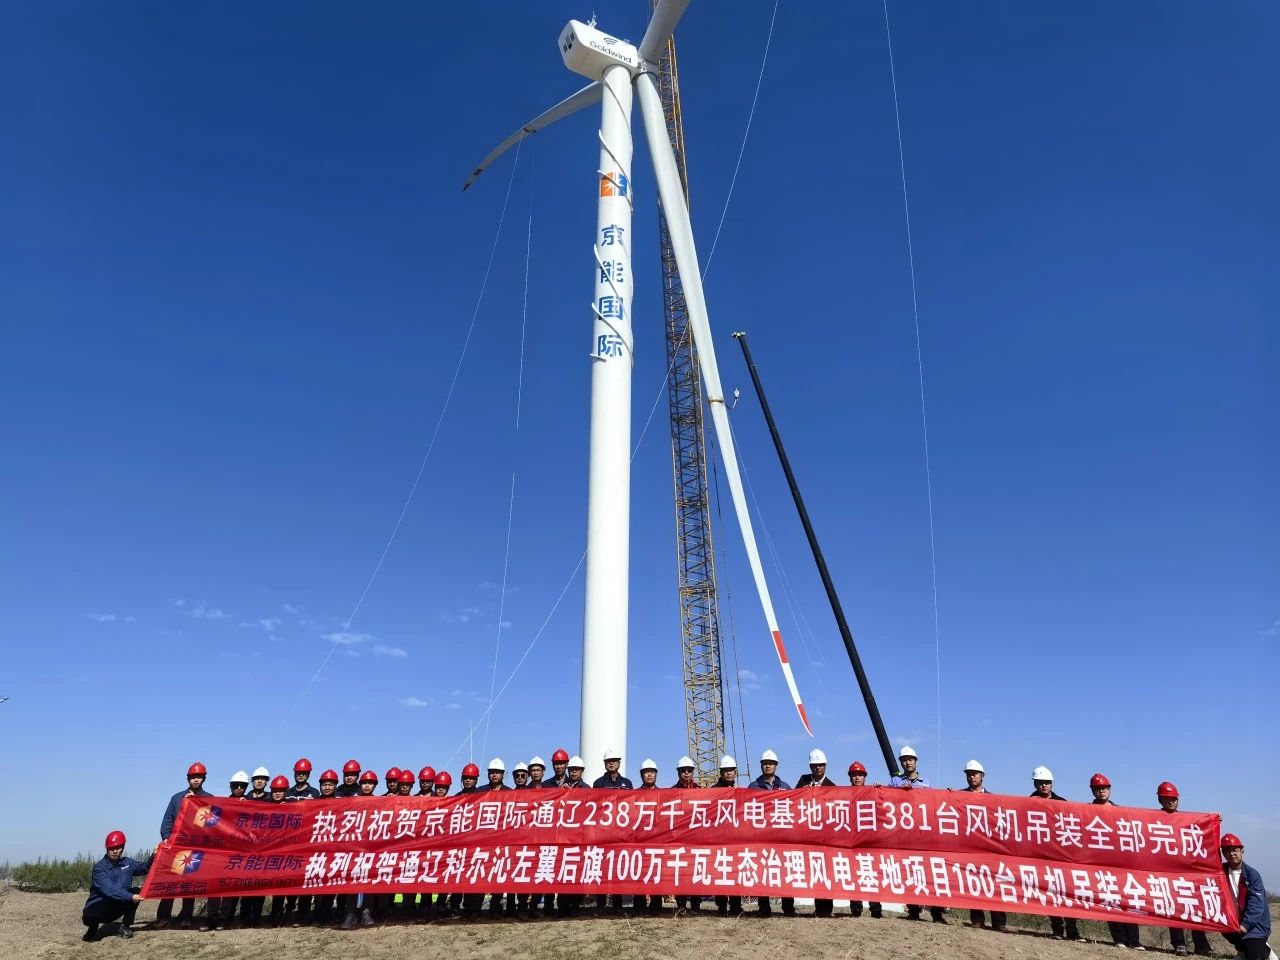 京能国际<em>内蒙古</em>通辽2.38GW风电基地项目381台风力发电机组吊装全部完成